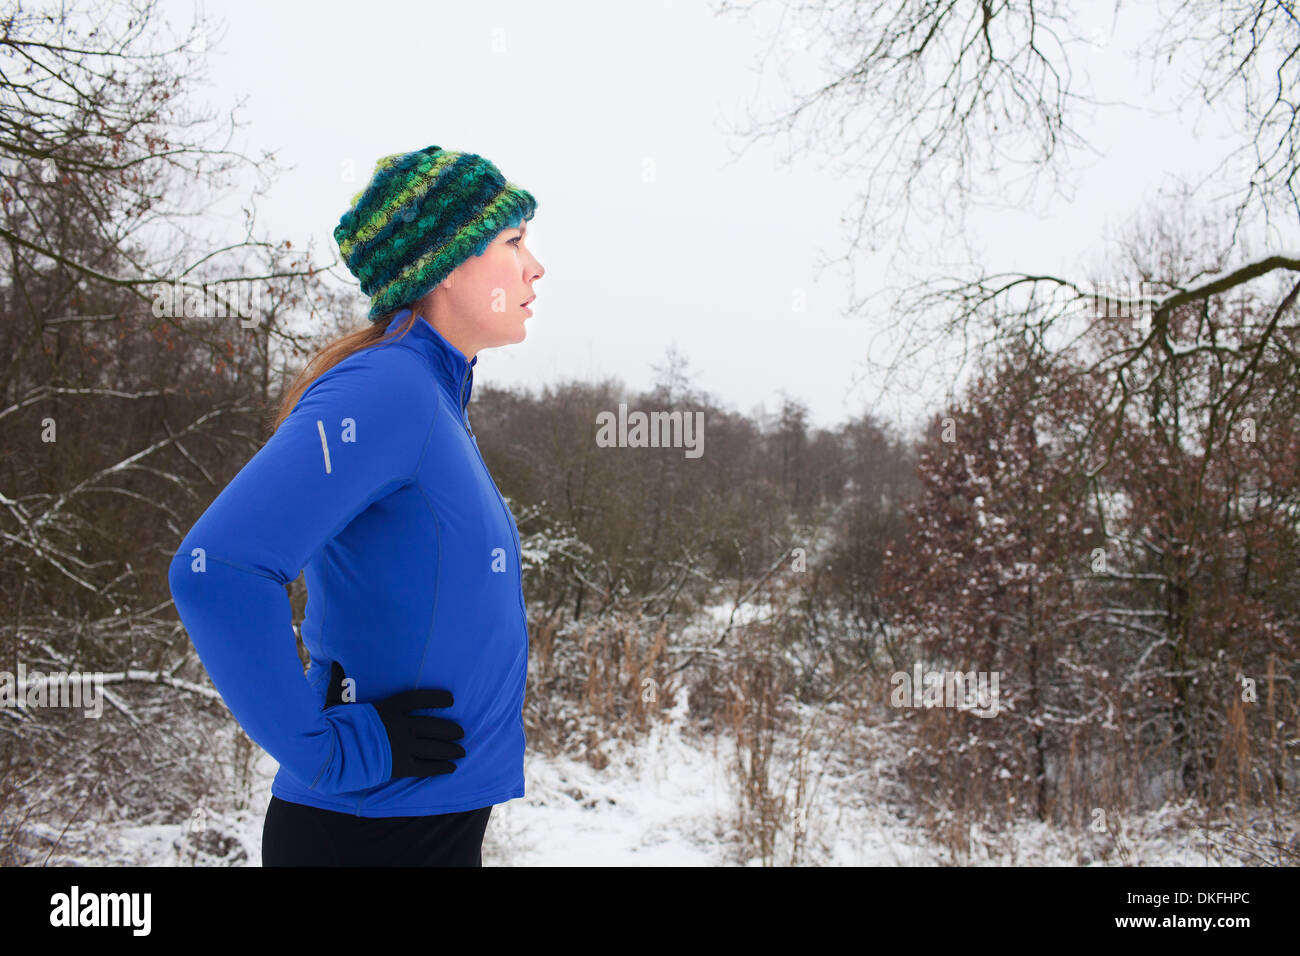 Female runner taking a break in winter scene Stock Photo